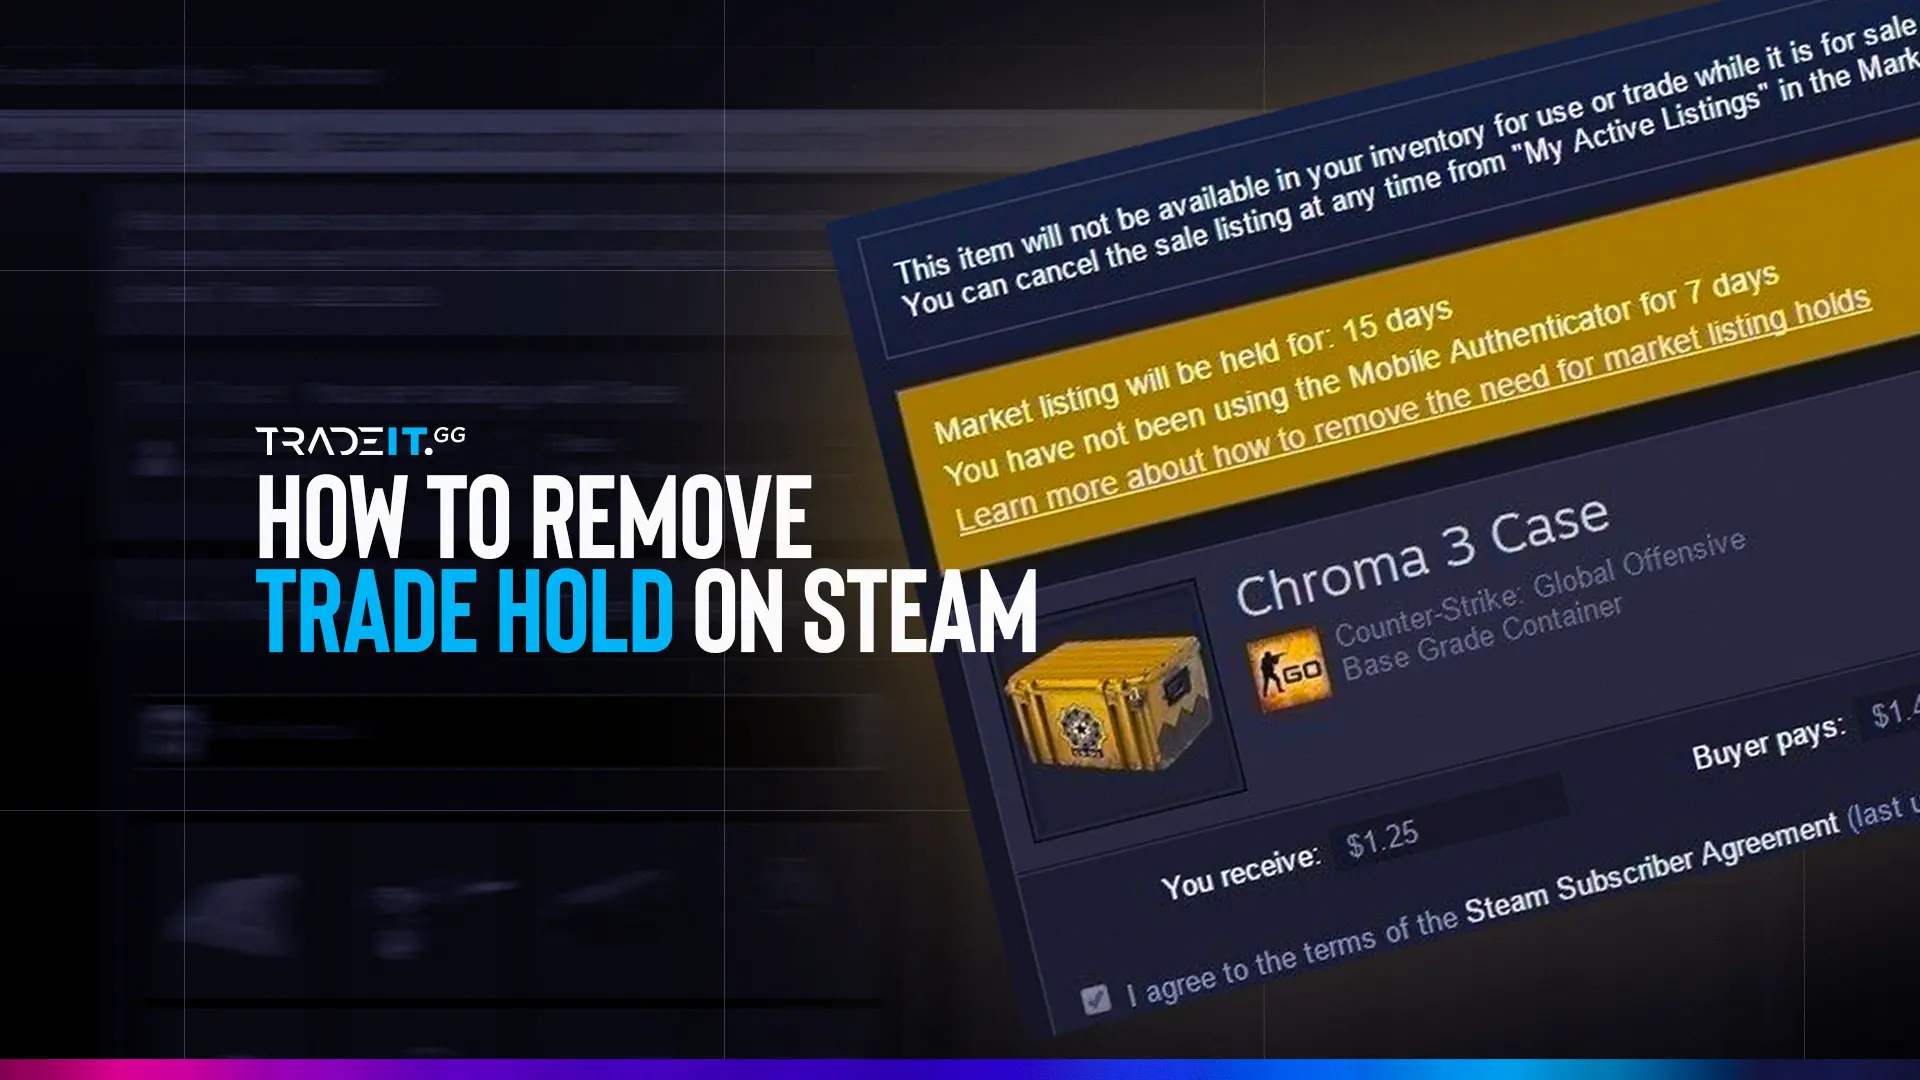 Steam Community Market :: Listings for Chroma 2 Case